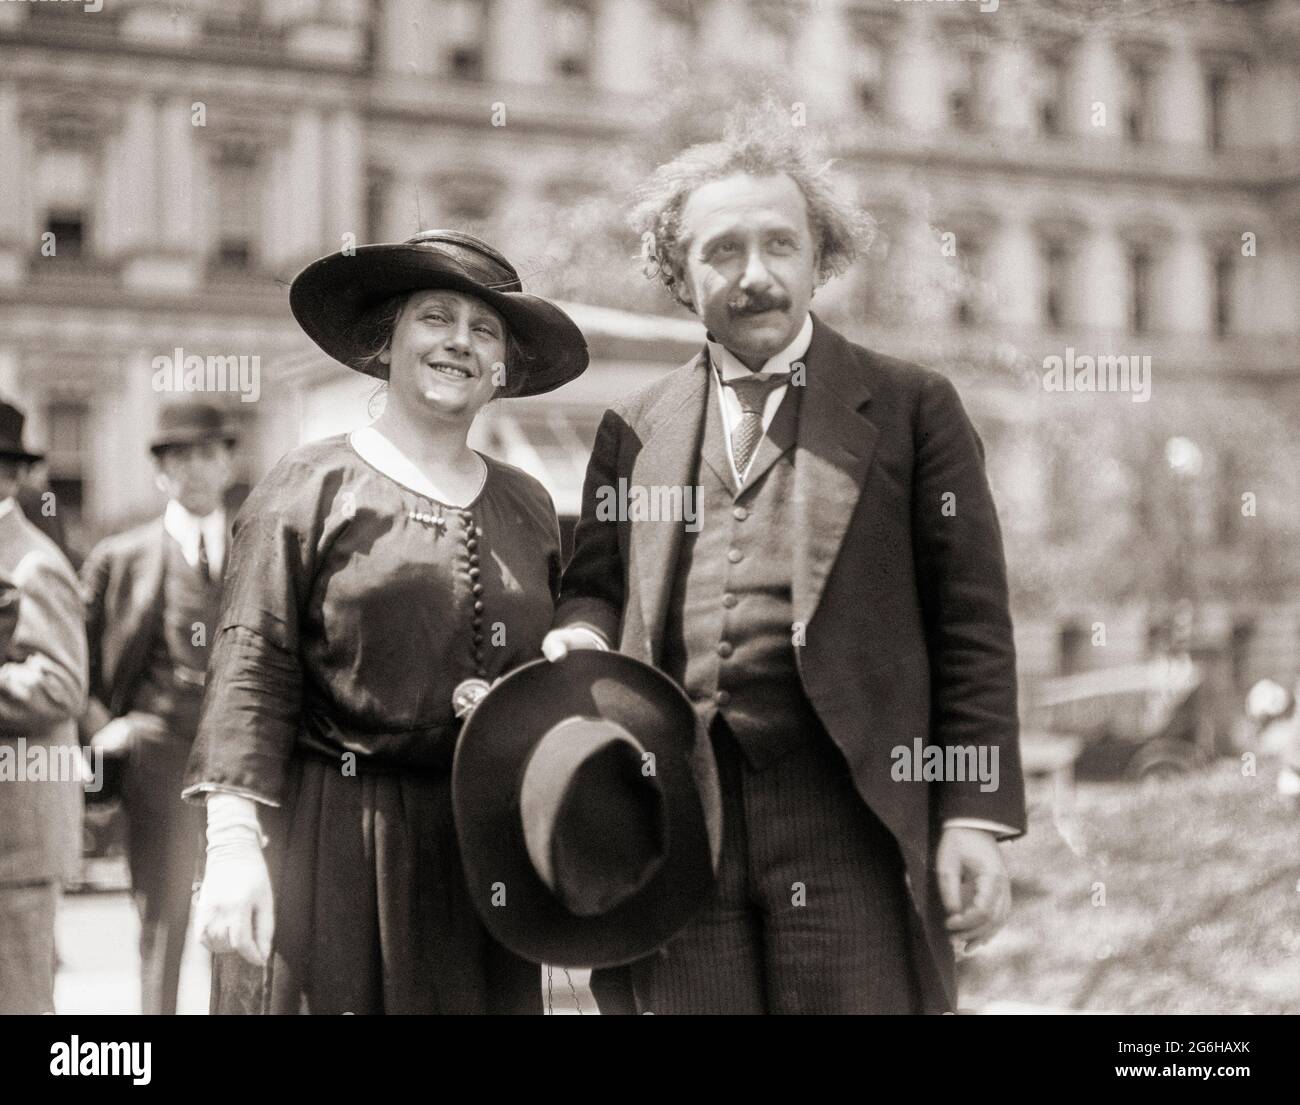 Albert Einstein avec sa femme Elsa au début des années 1920. Albert Einstein, 1879 - 1955. Physicien théorique d'origine allemande. Parmi de nombreuses réalisations, il a présenté des théories de la relativité générale, de la relativité spéciale et de l'équivalence masse–énergie. Elsa Einstein, 1876 - 1936. Seconde femme et cousin d'Albert d'origine allemande. Banque D'Images